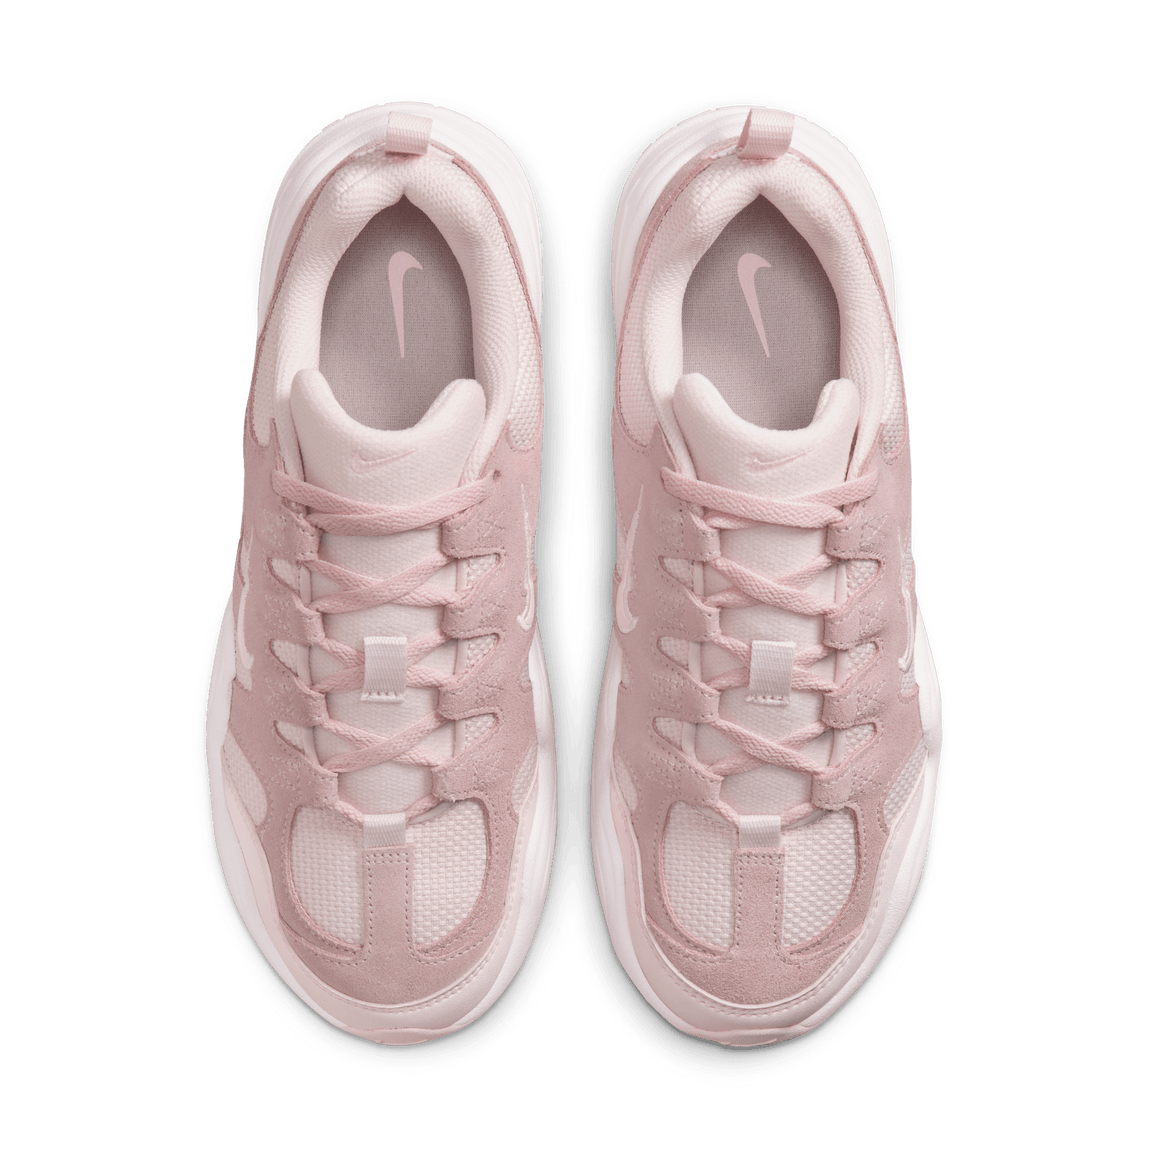 Women's Nike Tech Hera (Pearl Pink/Pink Foam-Pearl Pink) 4/21 - Women's Nike Tech Hera (Pearl Pink/Pink Foam-Pearl Pink) 4/21 - 